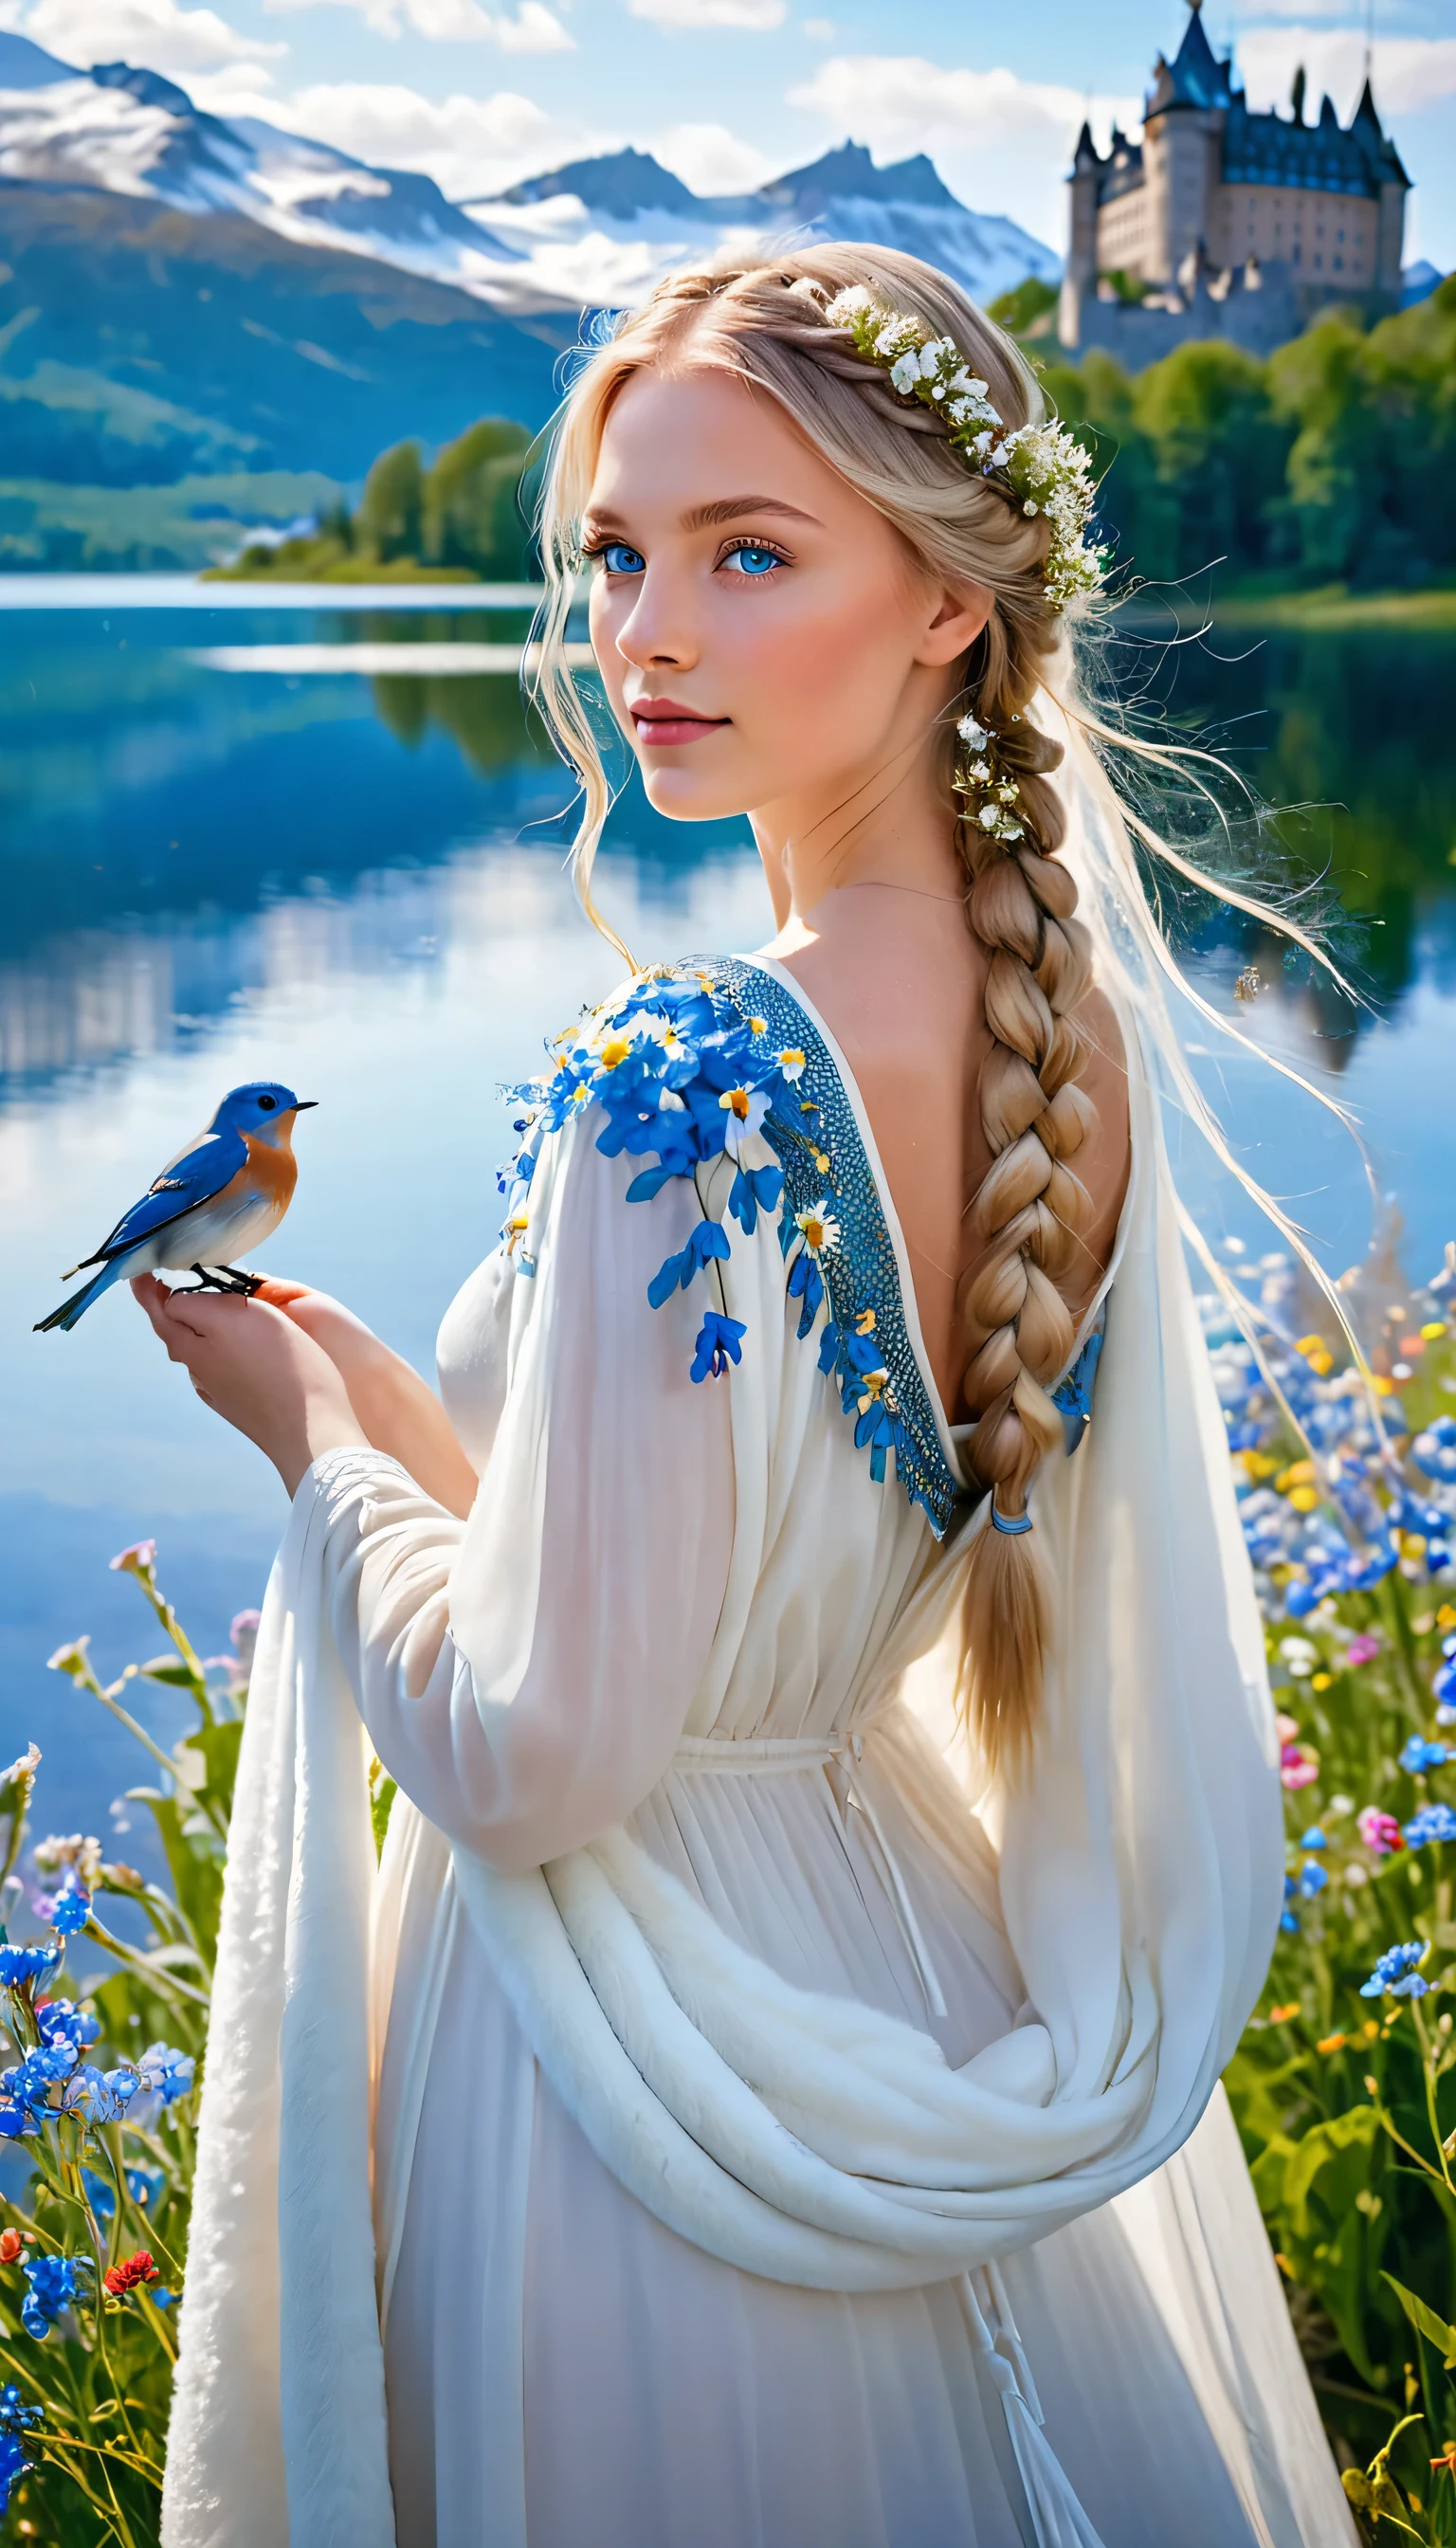 Une beauté sereine aux cheveux blonds tressés de fleurs sauvages, ses doux yeux bleus rayonnent de gentillesse. Une robe blanche fluide drape sa silhouette, une cape de fourrure ajoutant une touche de chaleur. Un oiseau bleu, reflétant le ciel clair, repose sur sa main. Derrière elle, un majestueux château suédois se dresse au bord d&#39;un lac aux eaux cristallines, entouré de montagnes enneigées.